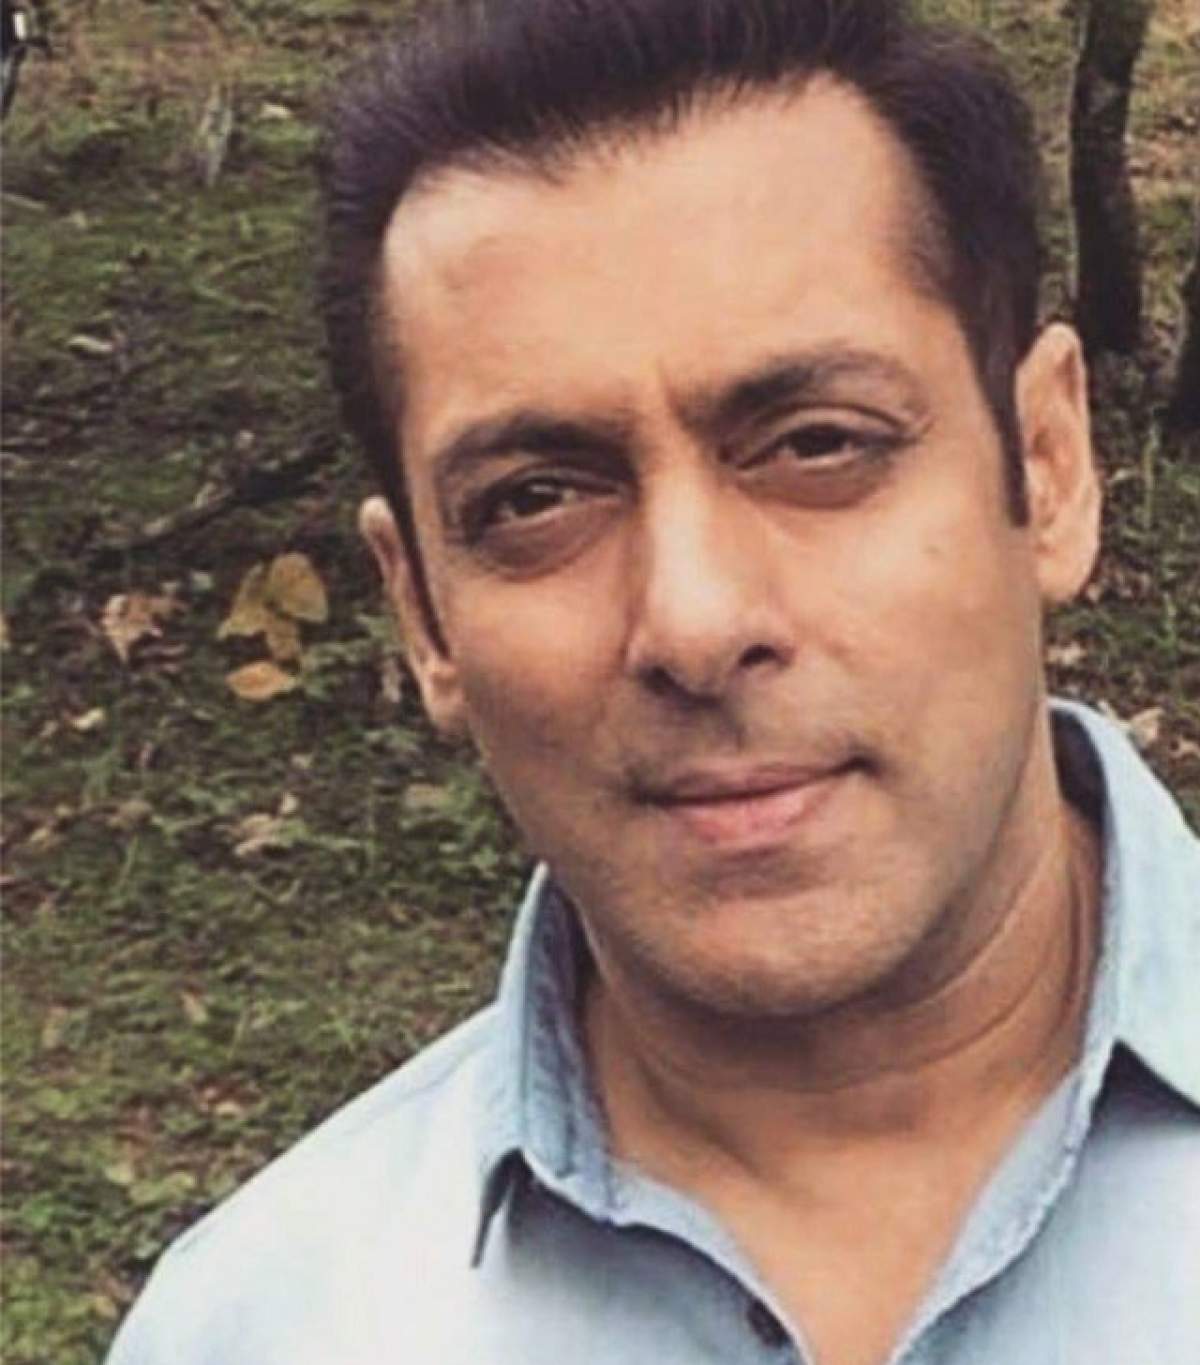 Salman Khan: "Sunt singur, confuz şi aştept să se clarifice lucrurile". Ce se întâmplă cu actorul